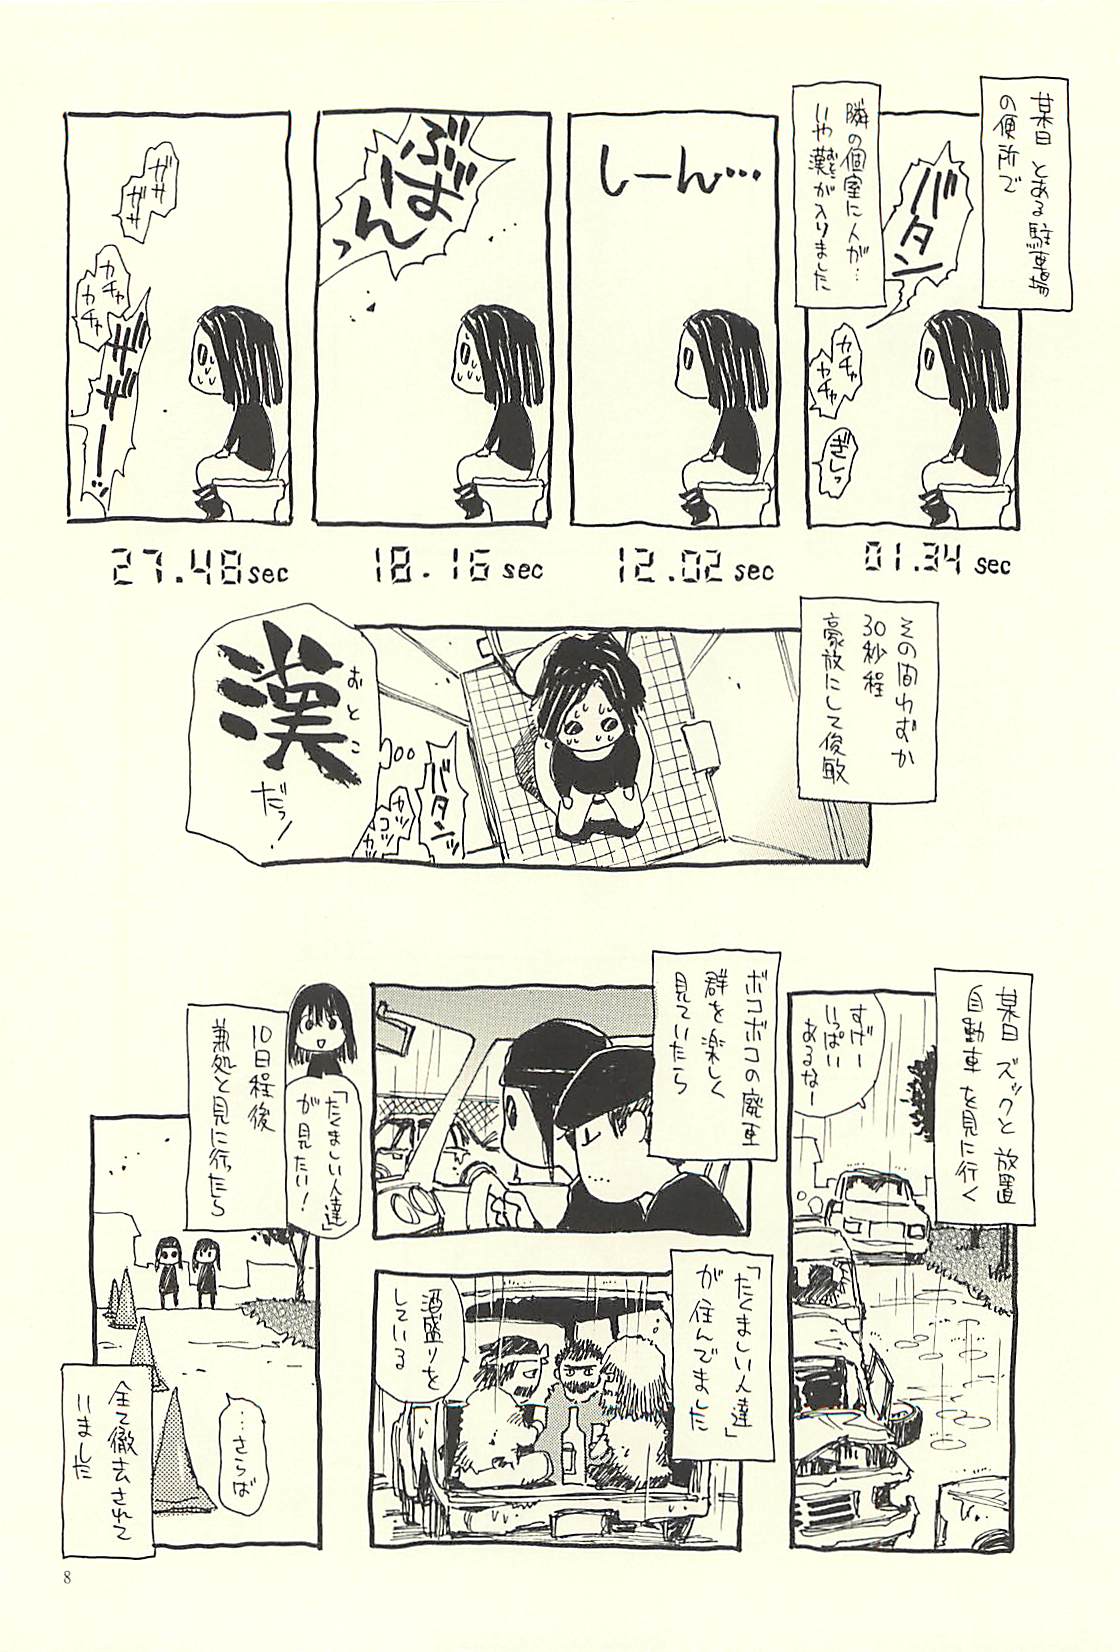 (C71) [NOUZUI MAJUTSU, NO-NO'S (Kawara Keisuke, Kanesada Keishi)] Nouzui Kawaraban Hinichijouteki na Nichijou III (C71) [脳髄魔術, NO-NO'S (瓦敬助, 兼処敬士)] 脳髄瓦版 非日常的な日常III